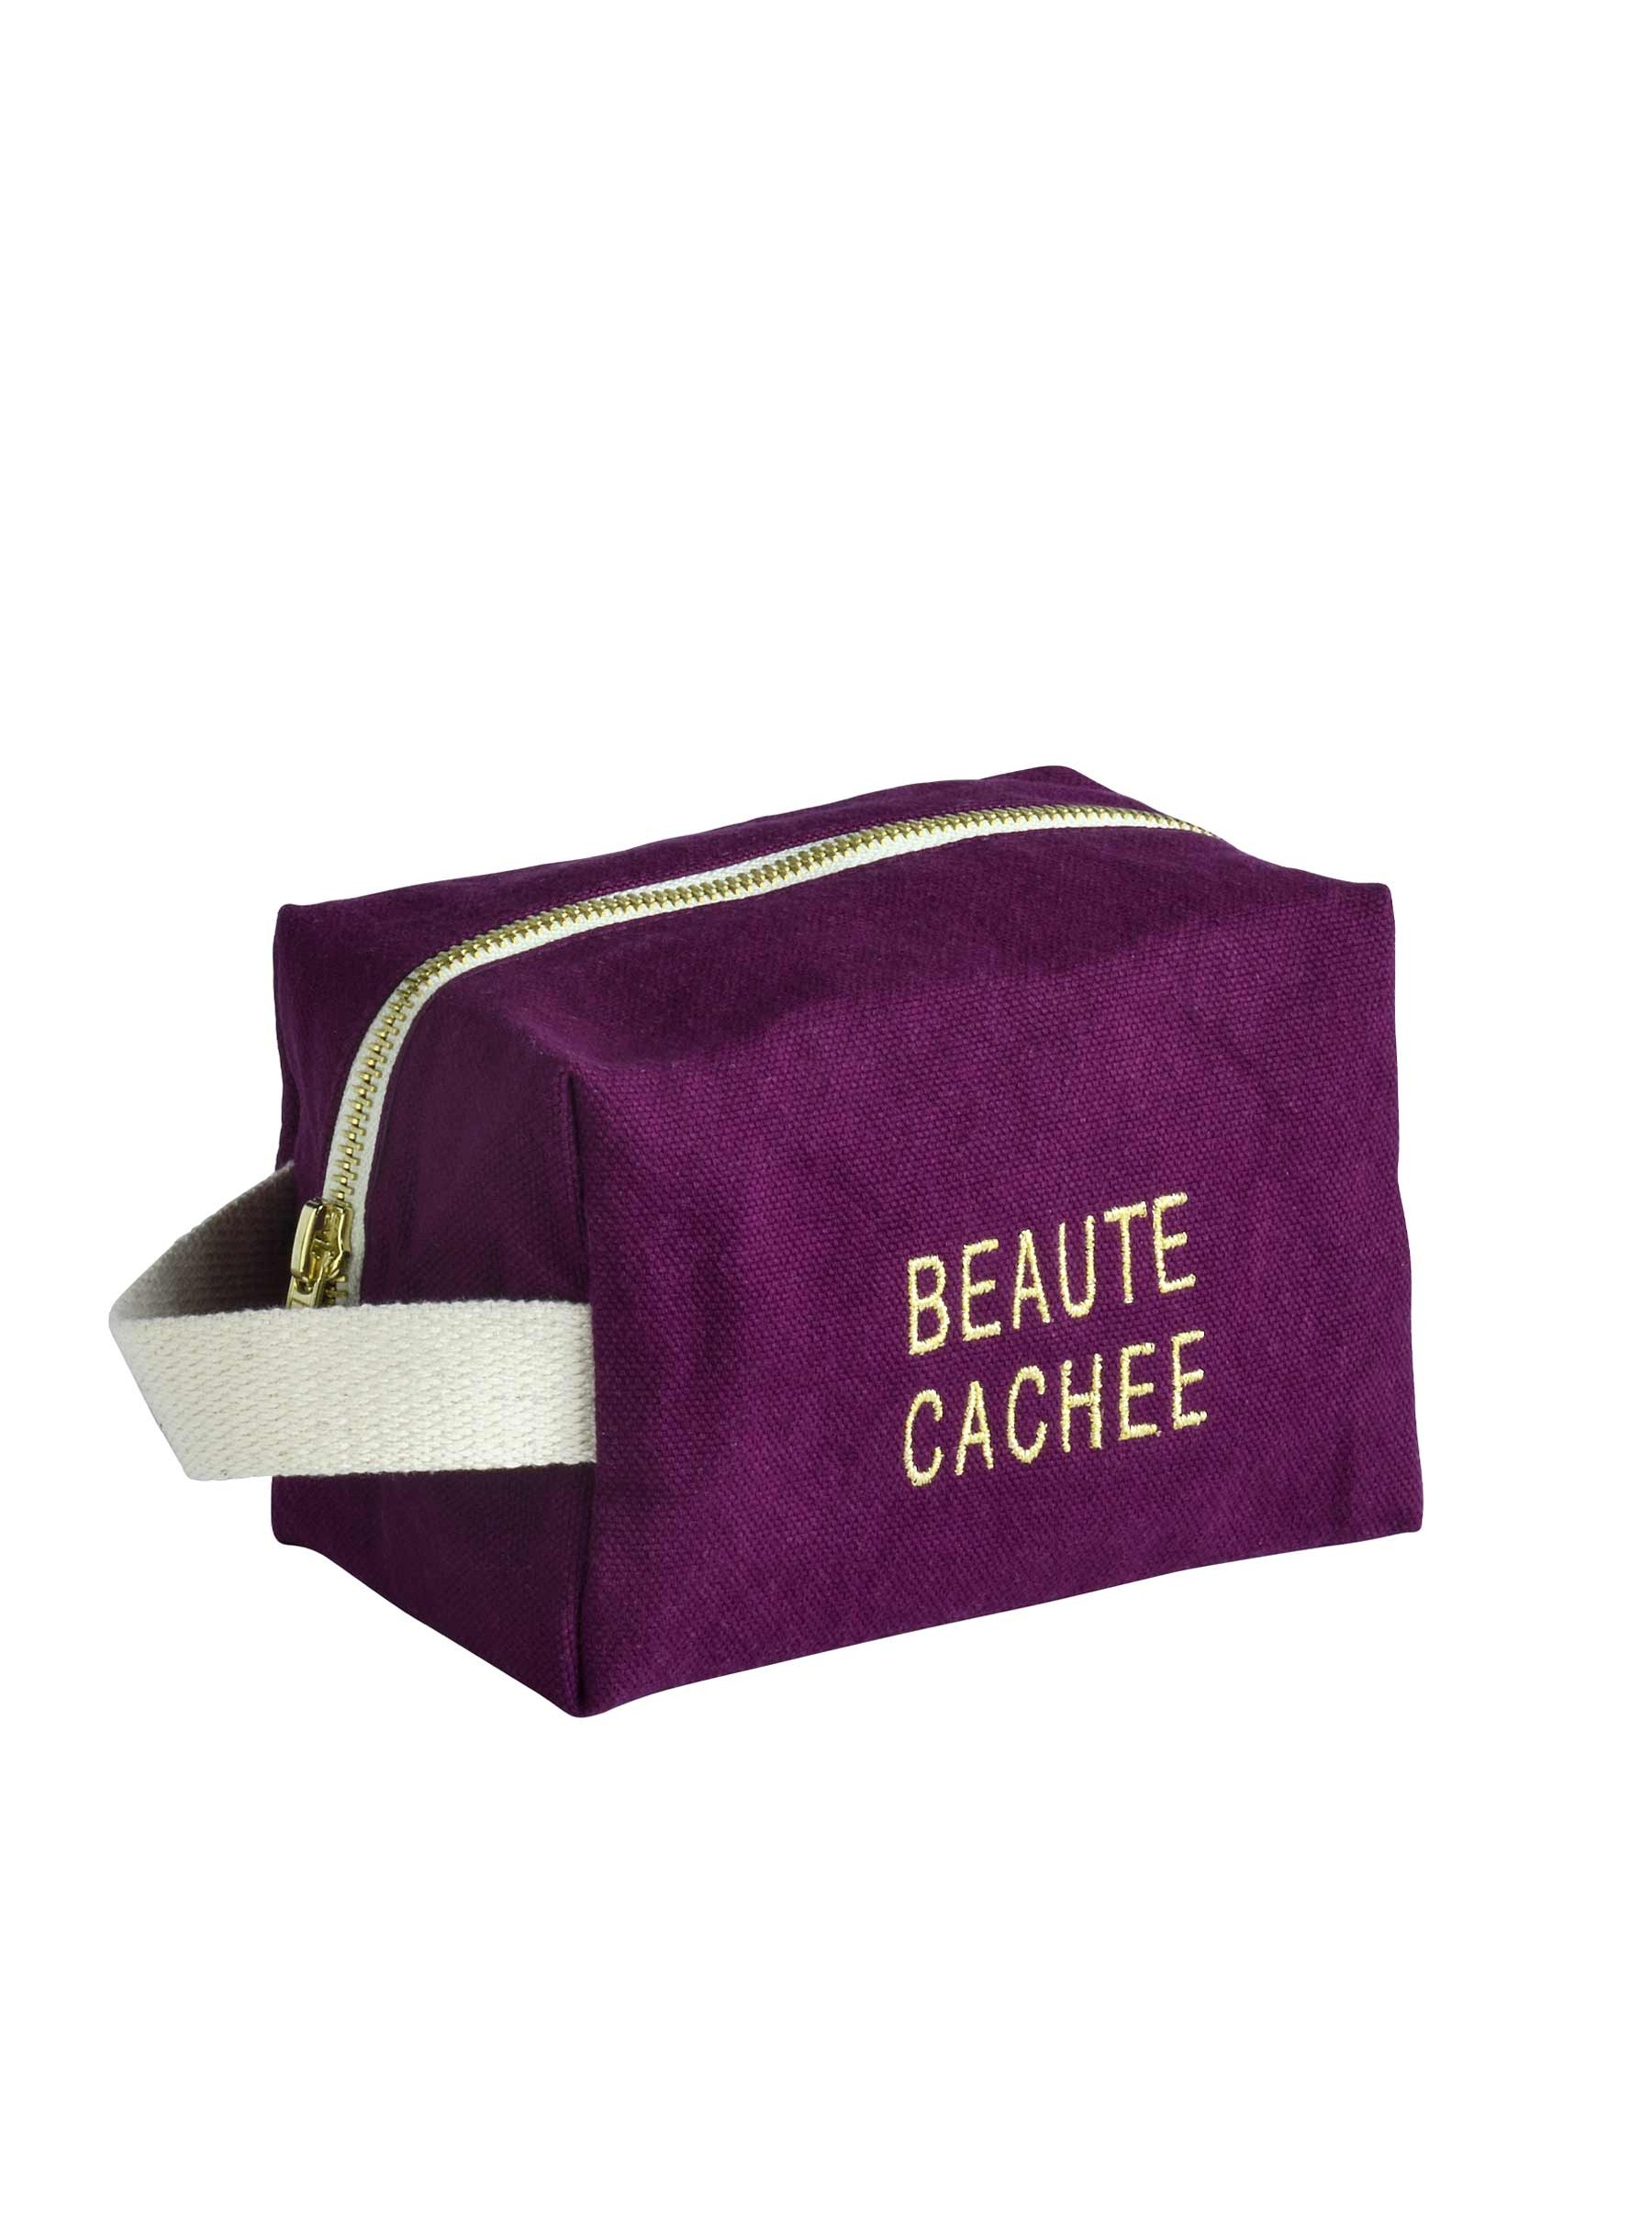 Trousse cube coton bio PM brodée violette